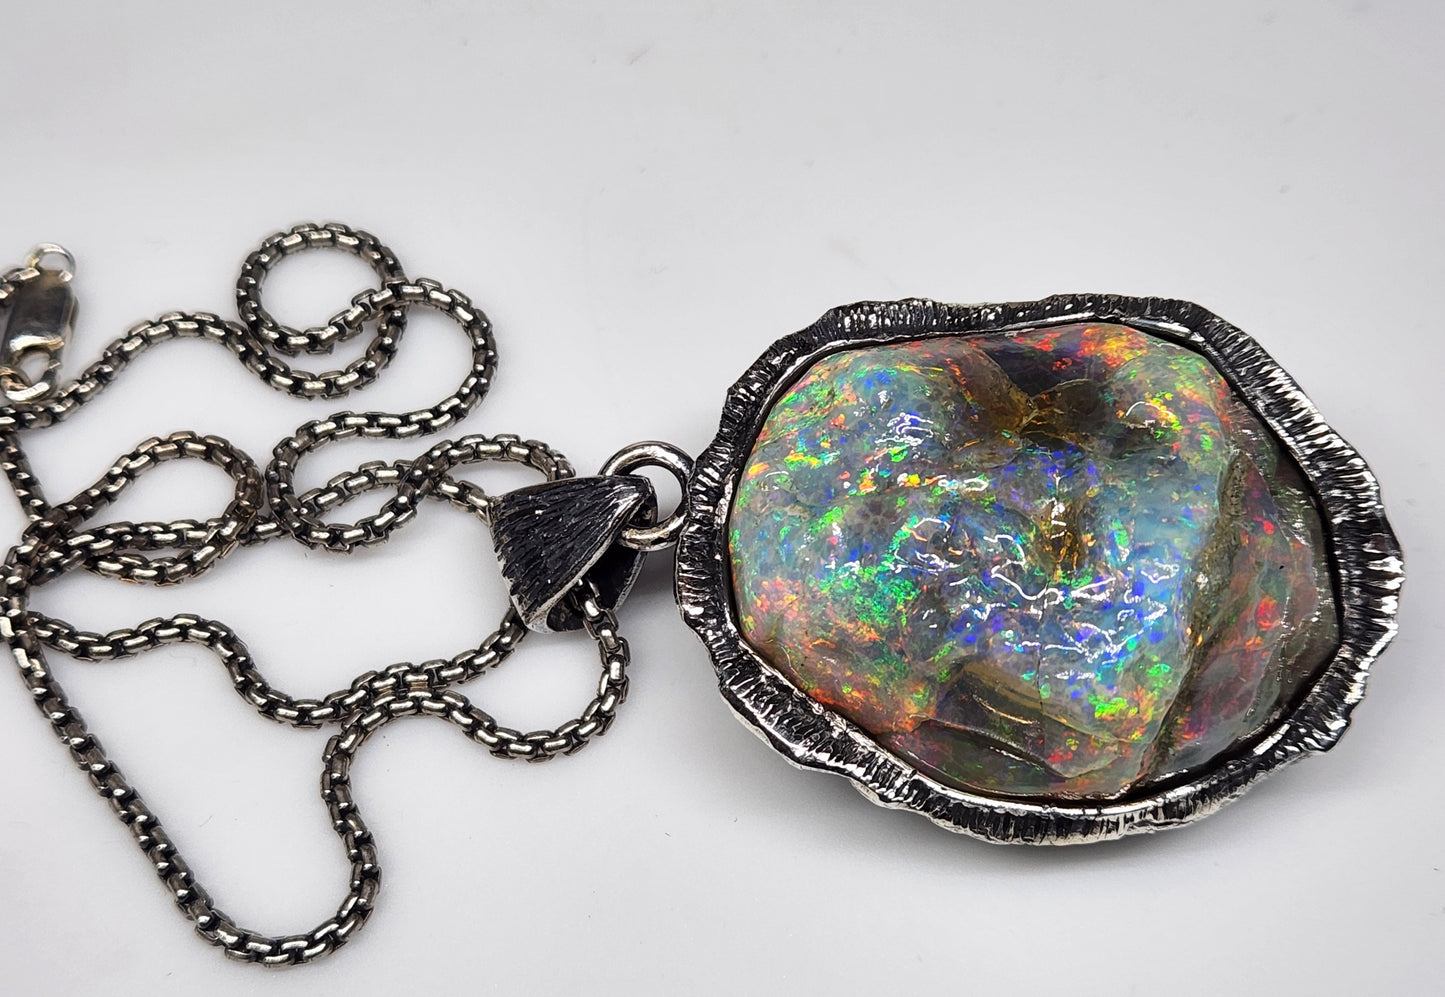 Large Natural Opal Specimen Pendant Sterling Silver #356